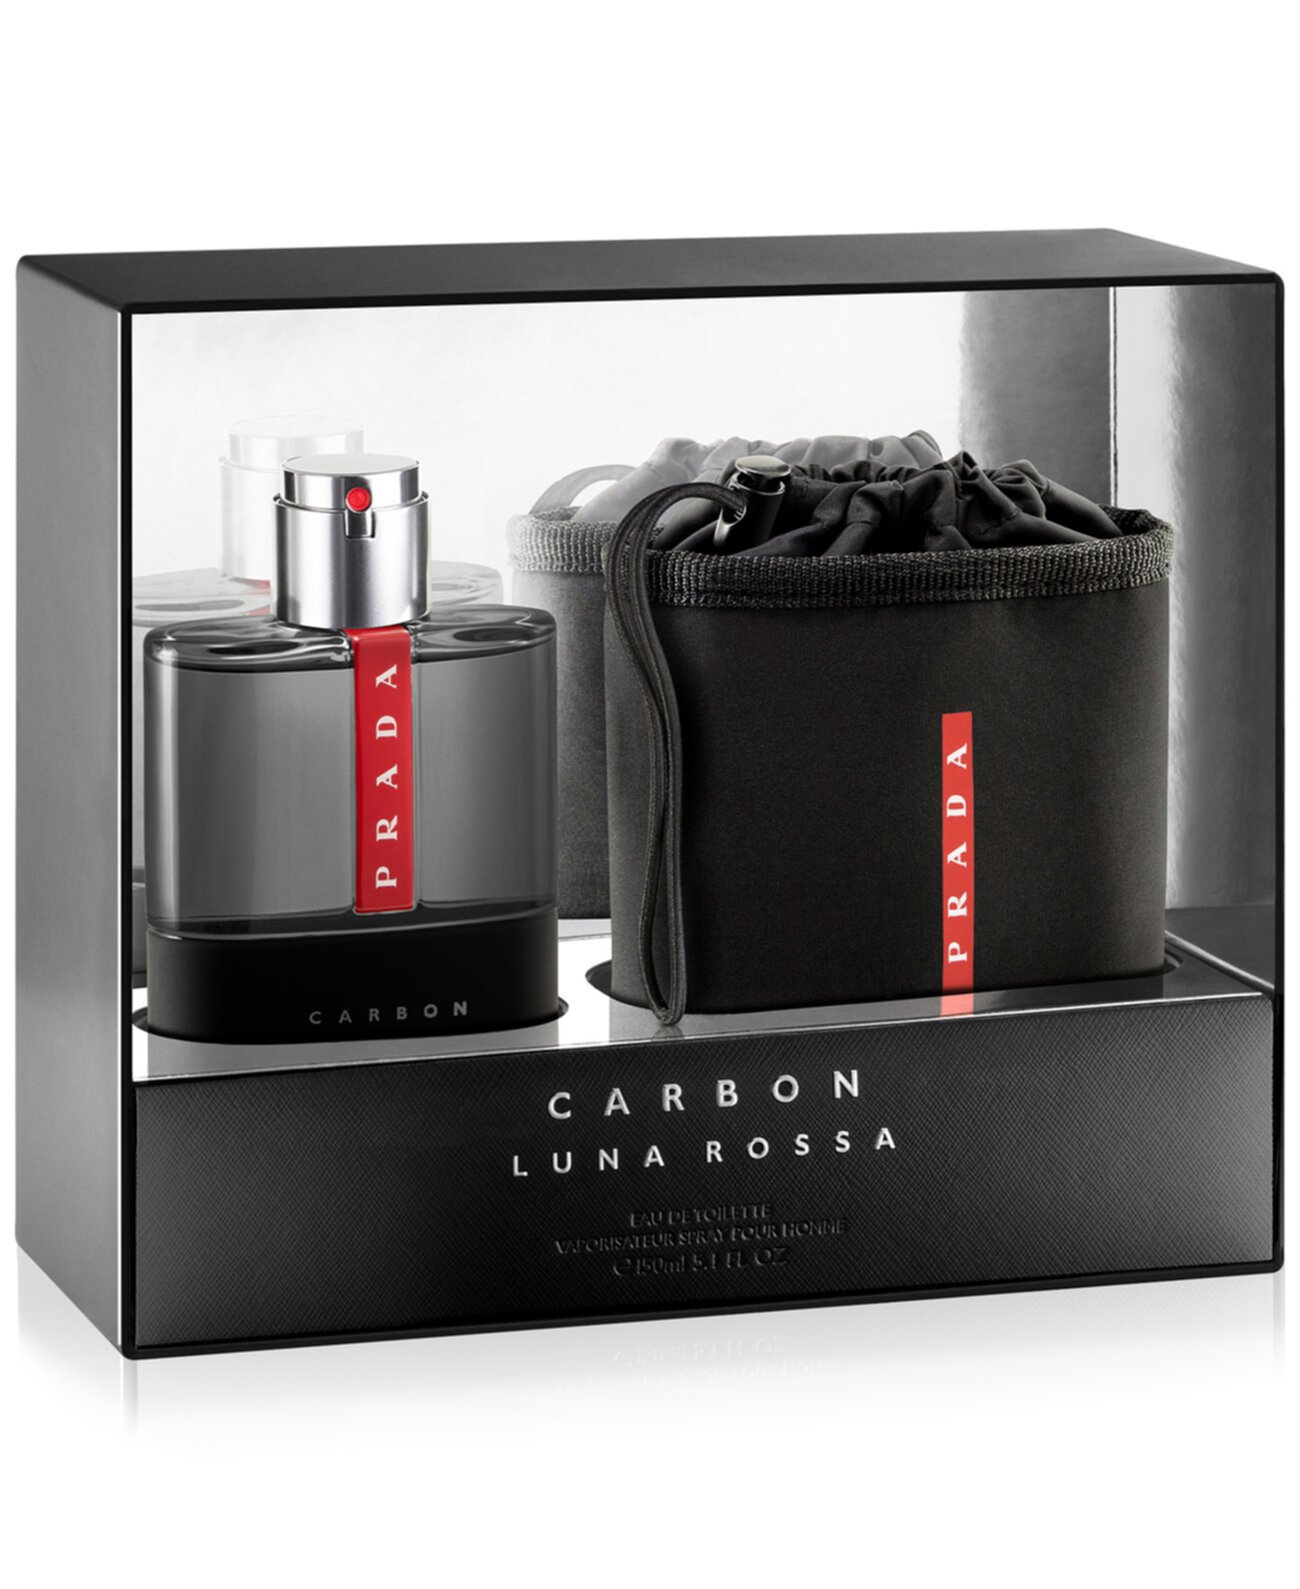 Мужская туалетная вода Luna Rossa Carbon, коллекционное издание, 5,1 унции. Prada